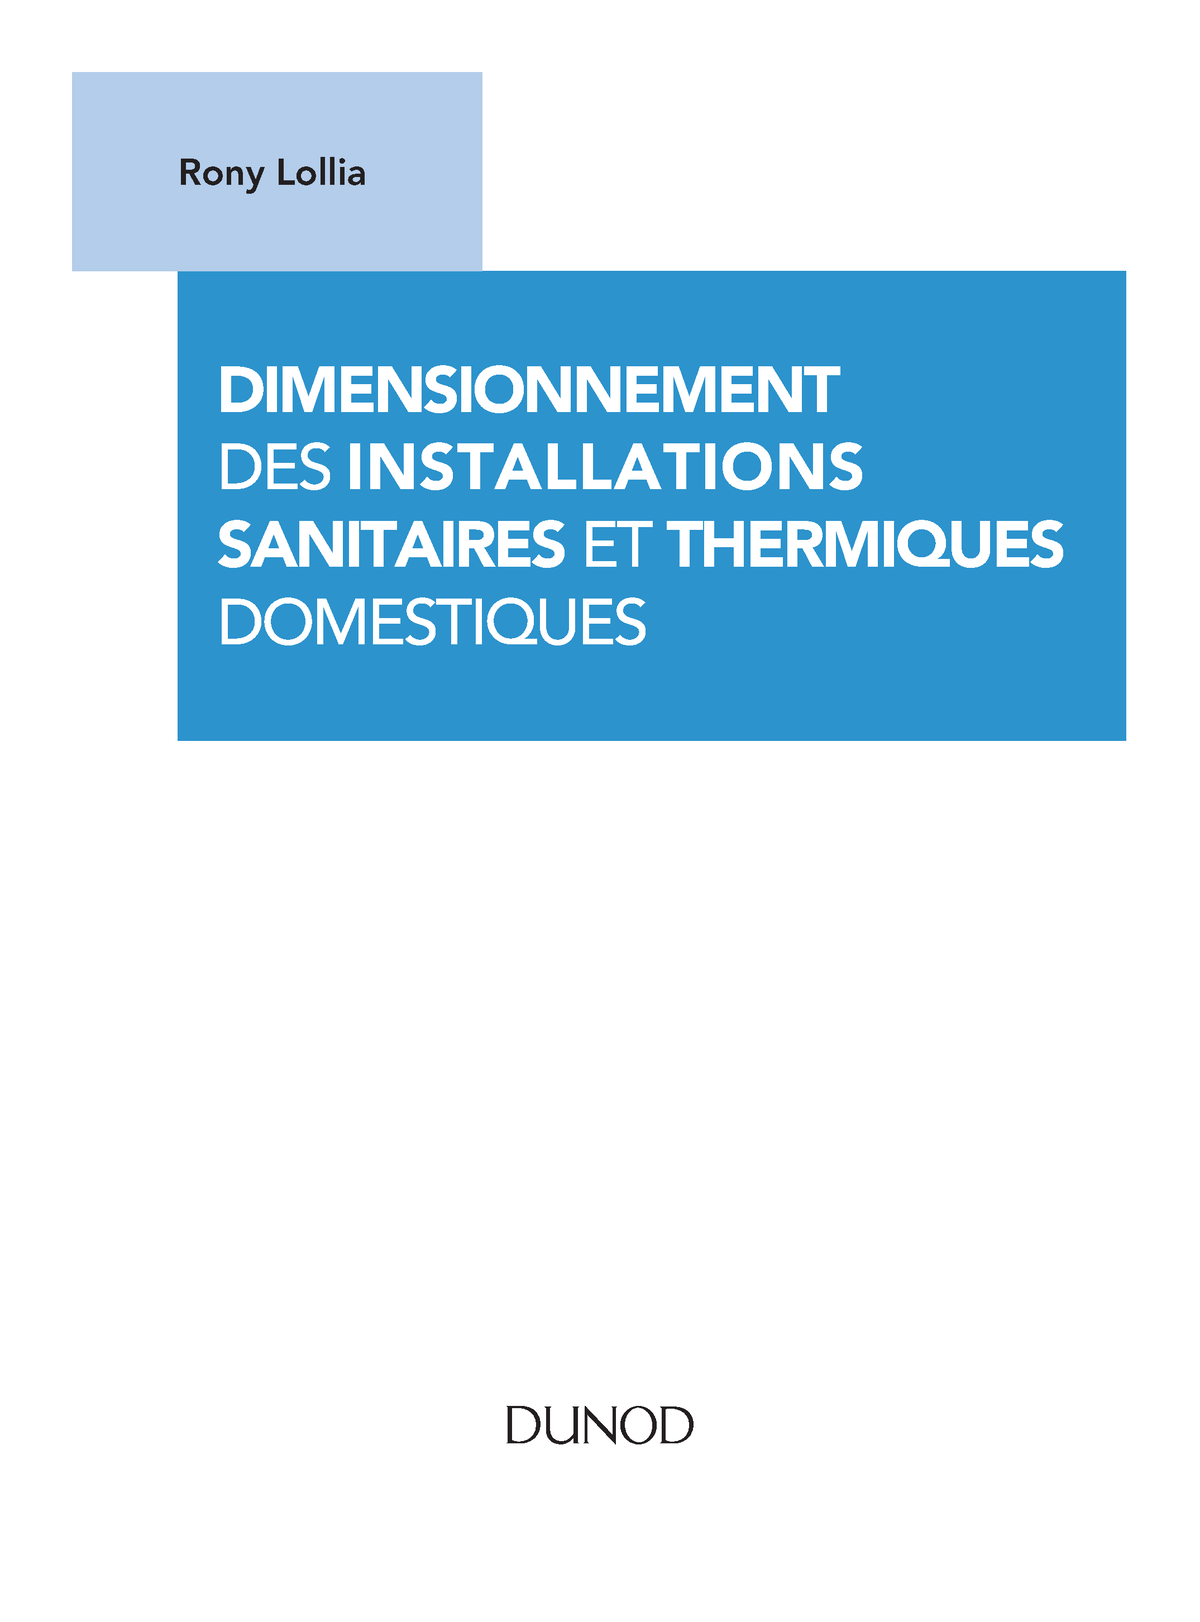 Info] Schéma d'évacuation et d'installation de machine a laver (Page 1) –  Réseaux d'évacuations et ventillation primaire/secondaire – Plombiers Réunis